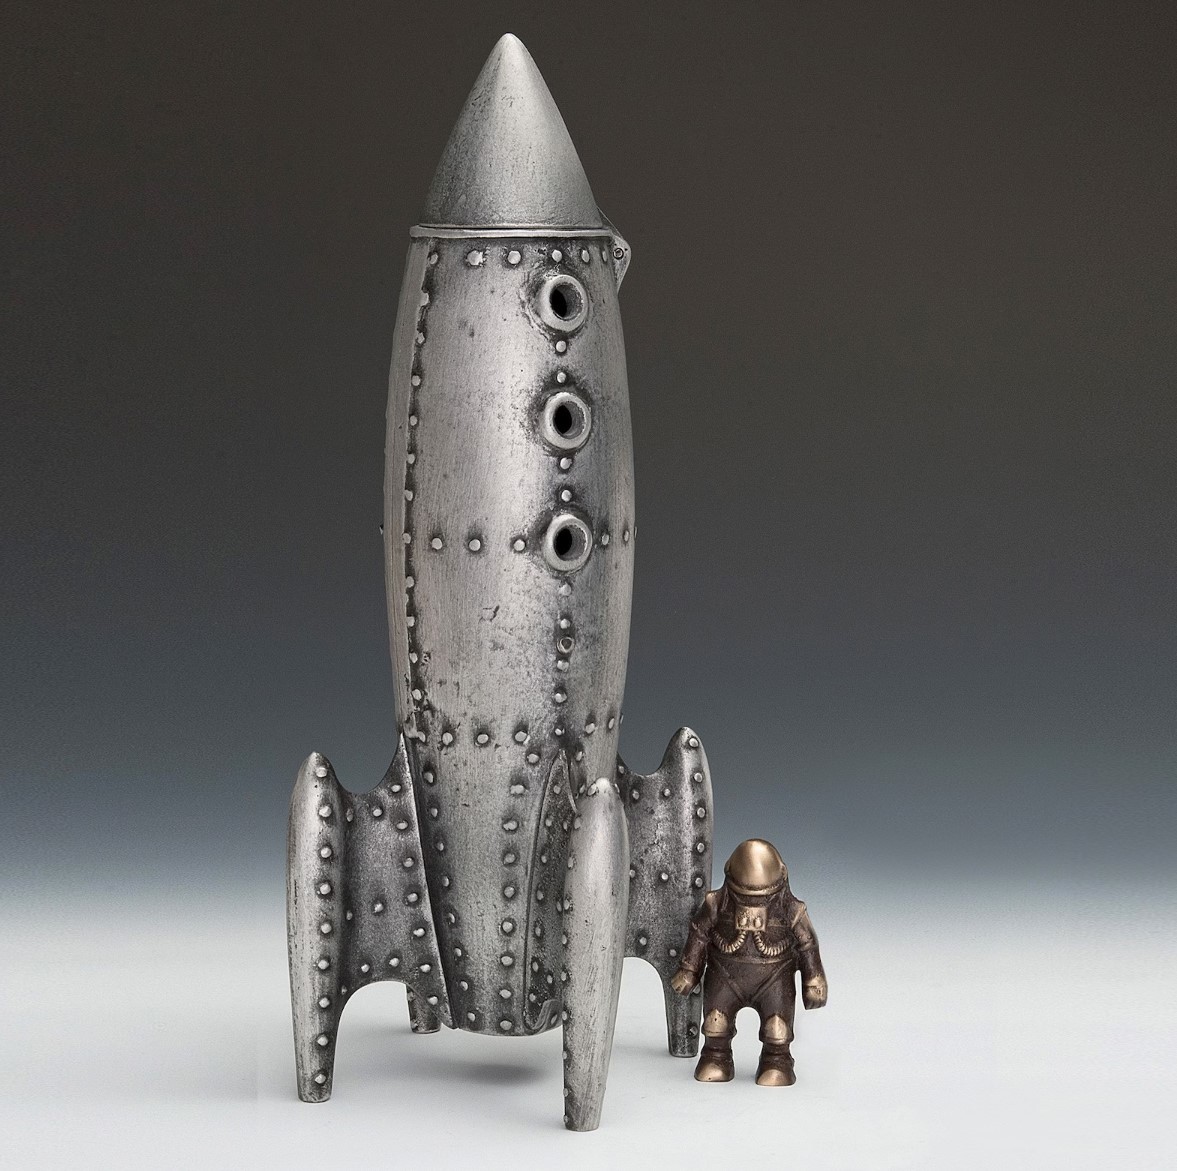 चन्द्र रॉकेट और अंतरिक्ष यात्री मूर्ति, किसी कलाकार द्वारा धातु से निर्मित, हस्तनिर्मित वस्तुएं, आंतरिक भाग, विविध वस्तुएं, आभूषण, वस्तु